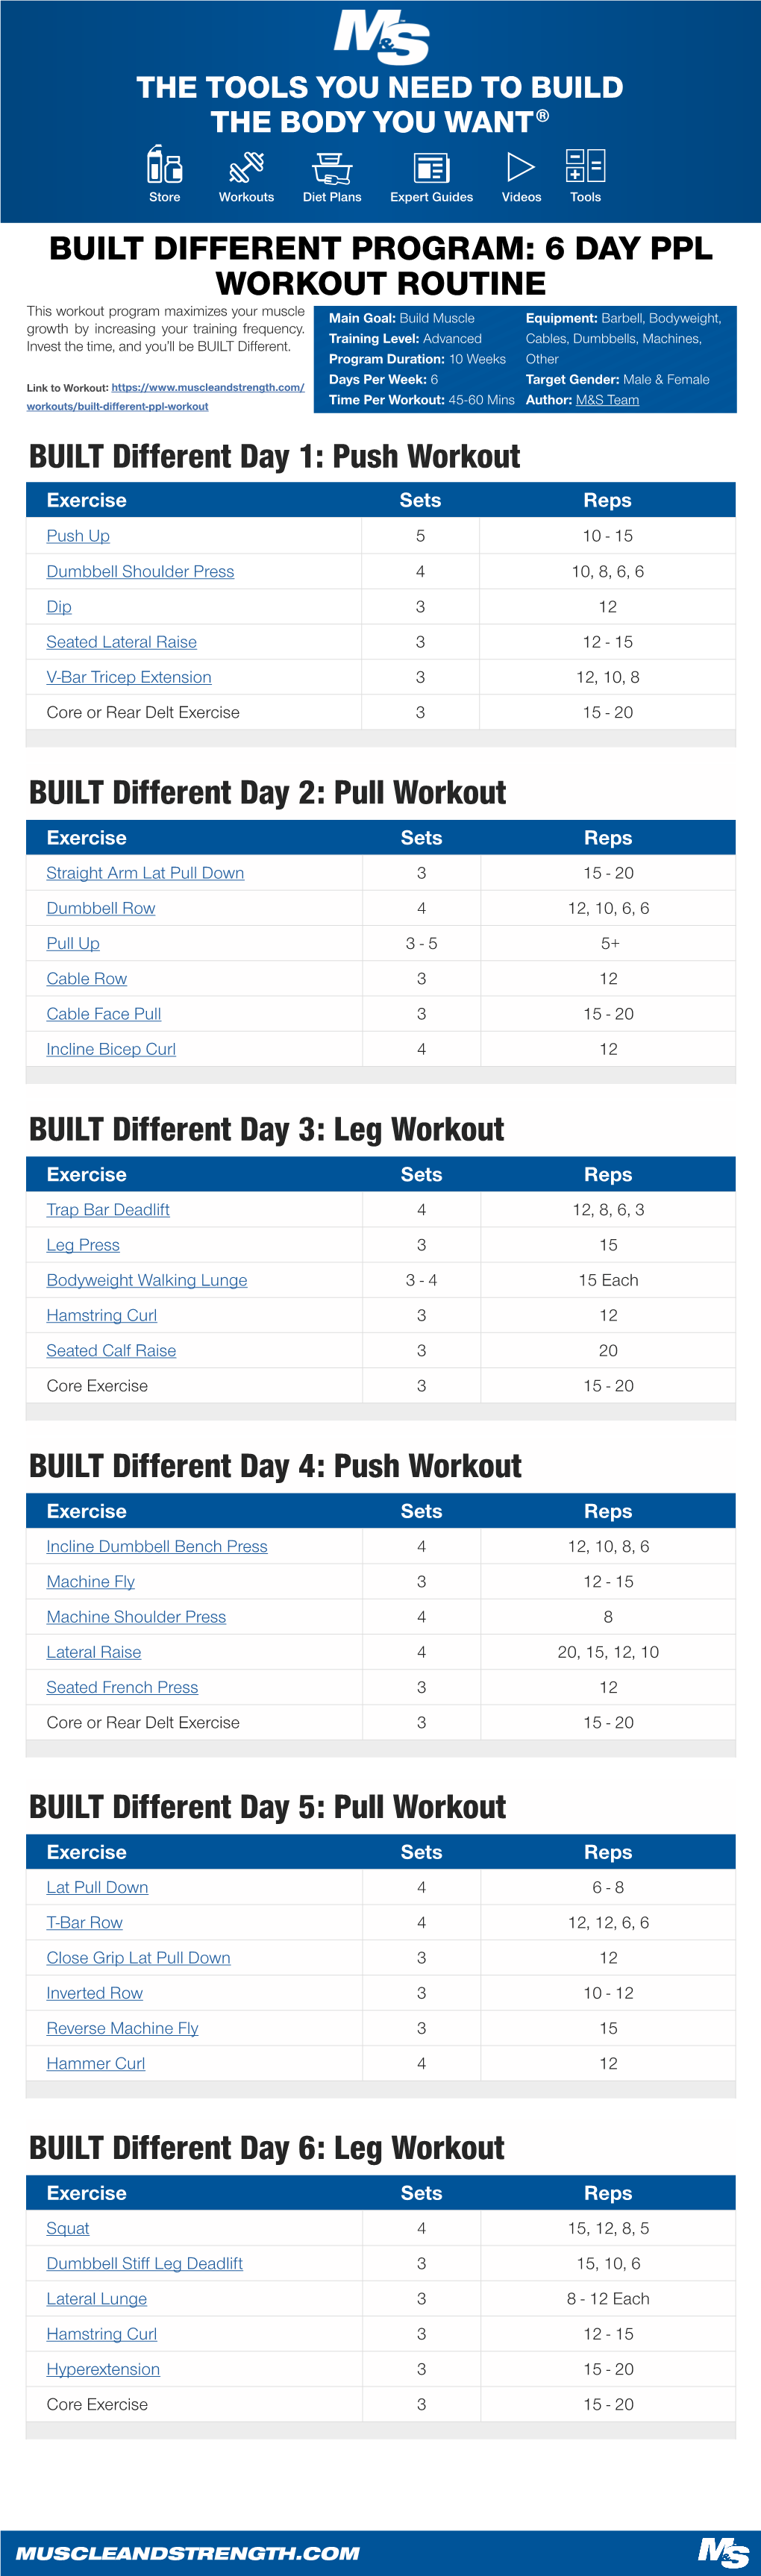 Leg Workout BUILT Different Day 4